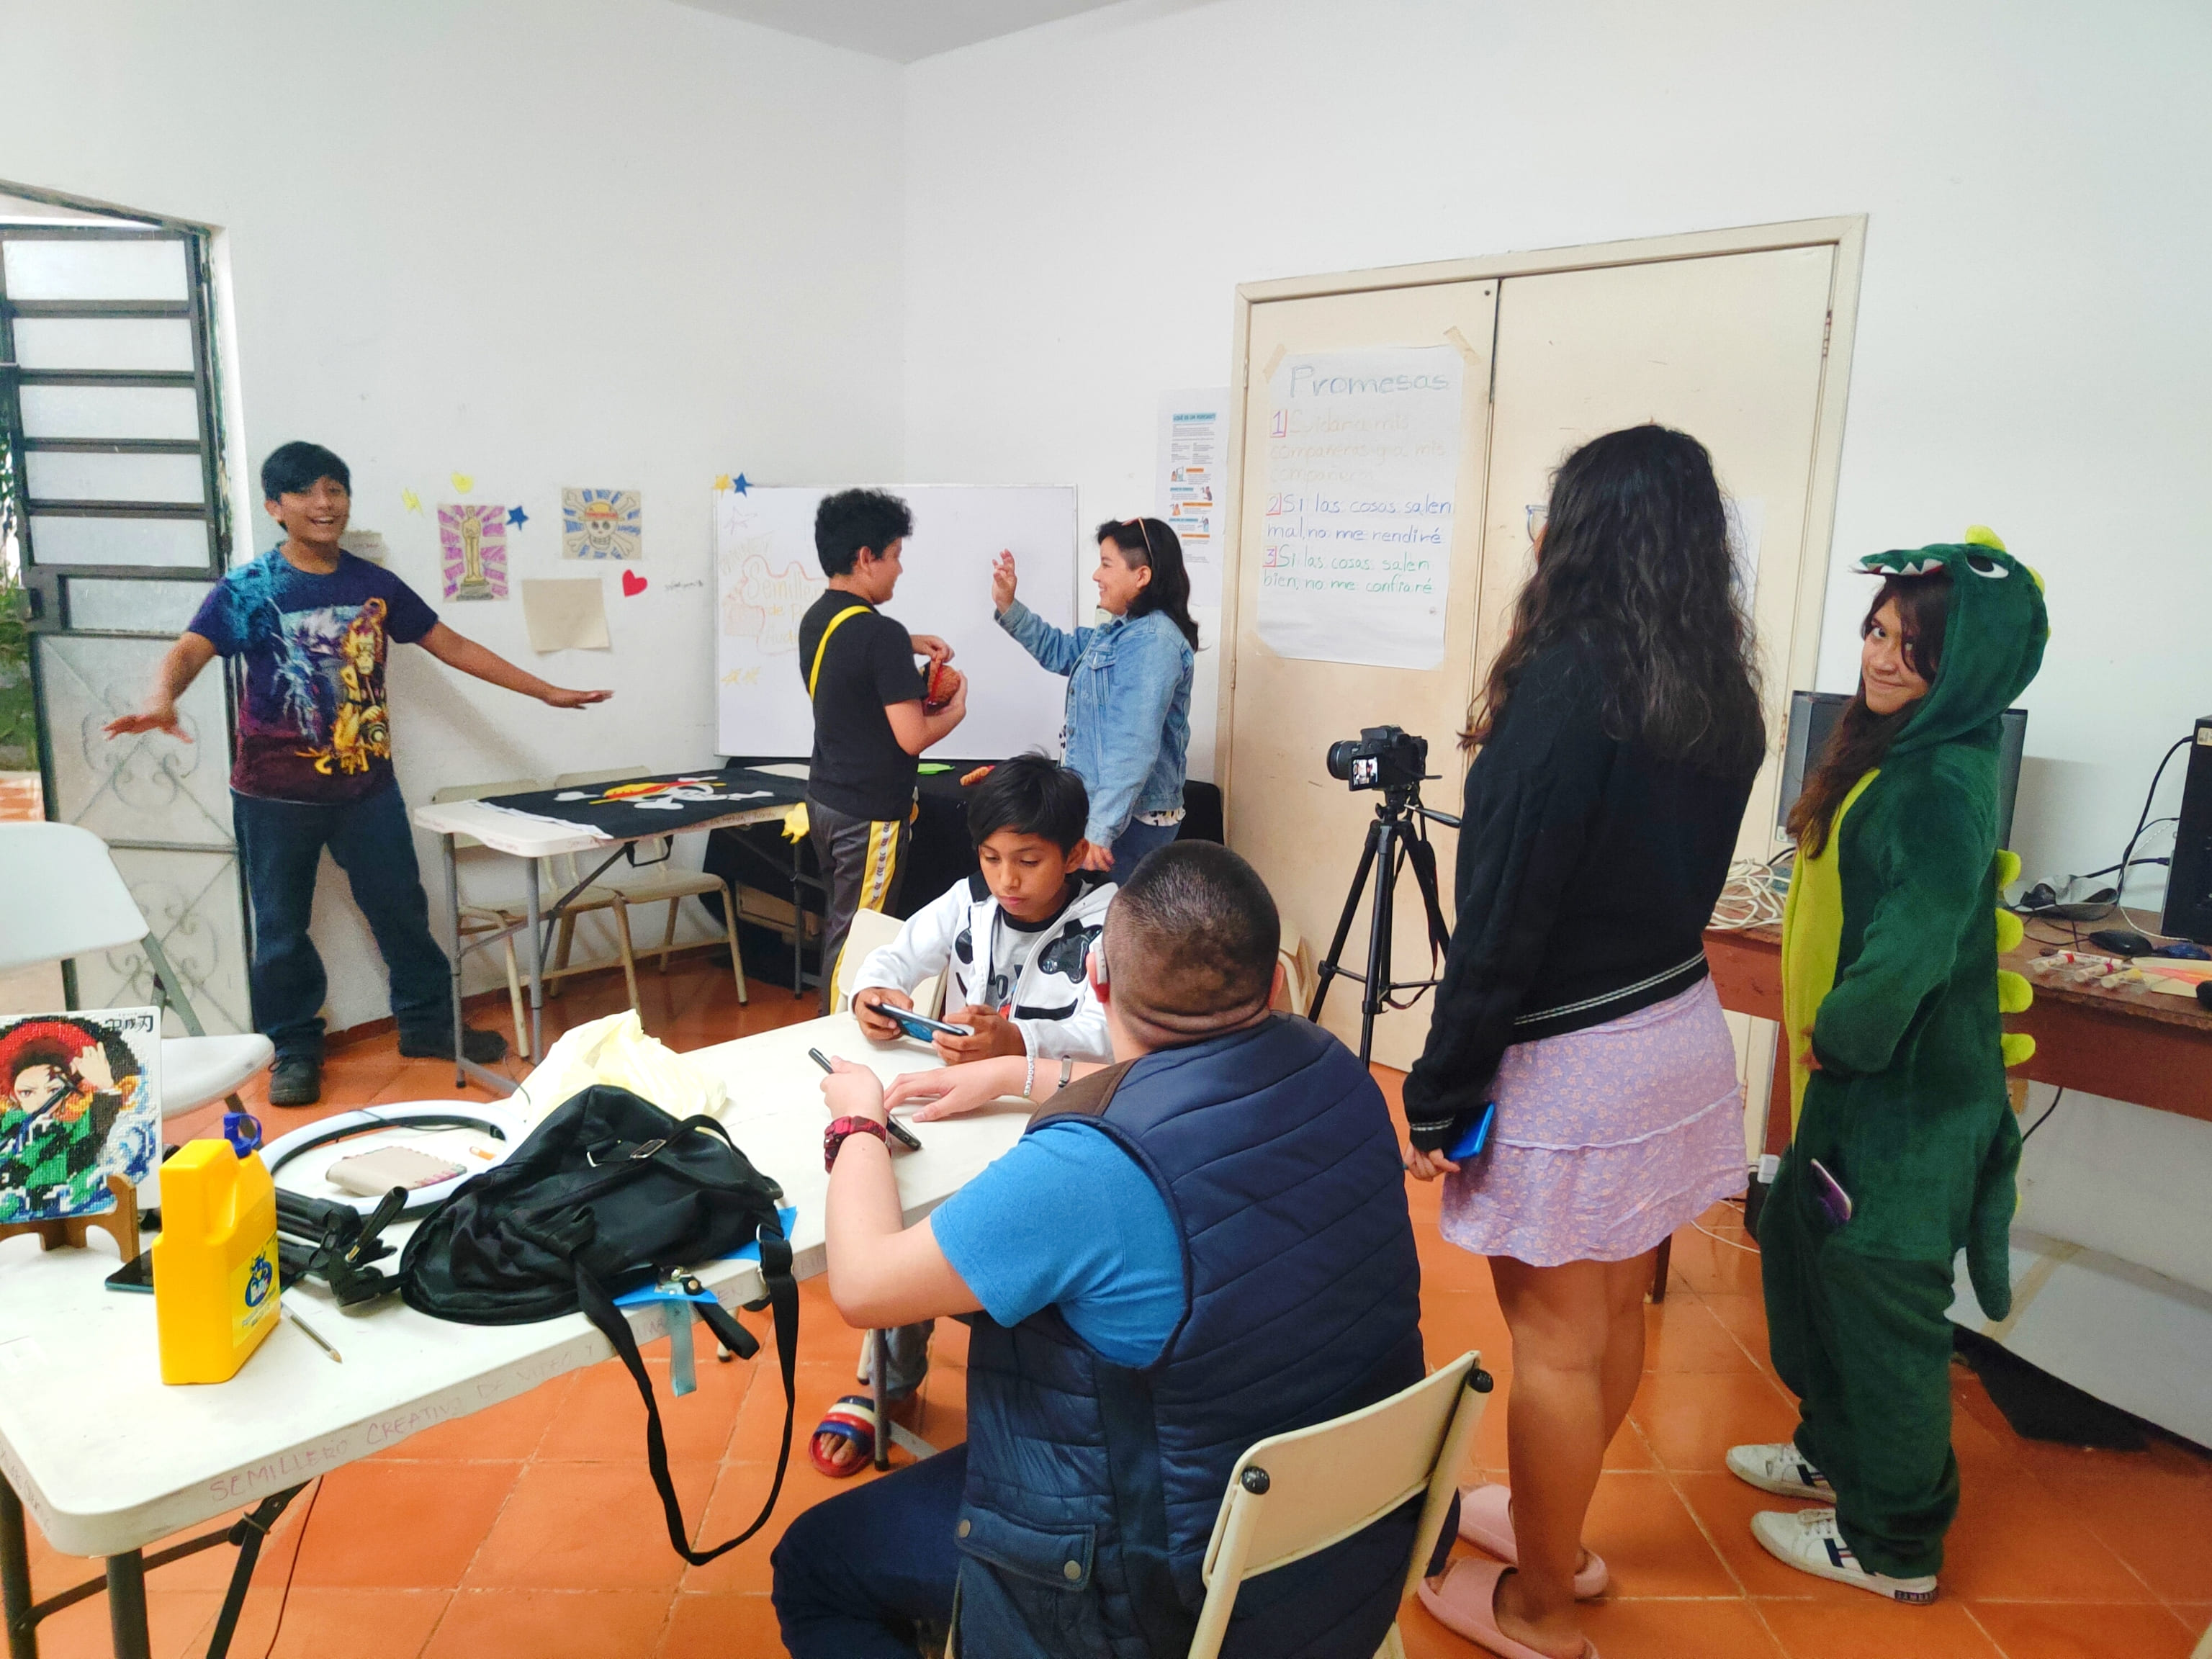 Entrada: Cultivar el cuidado, experiencias del Semillero Creativo de Producción audiovisual en Mérida